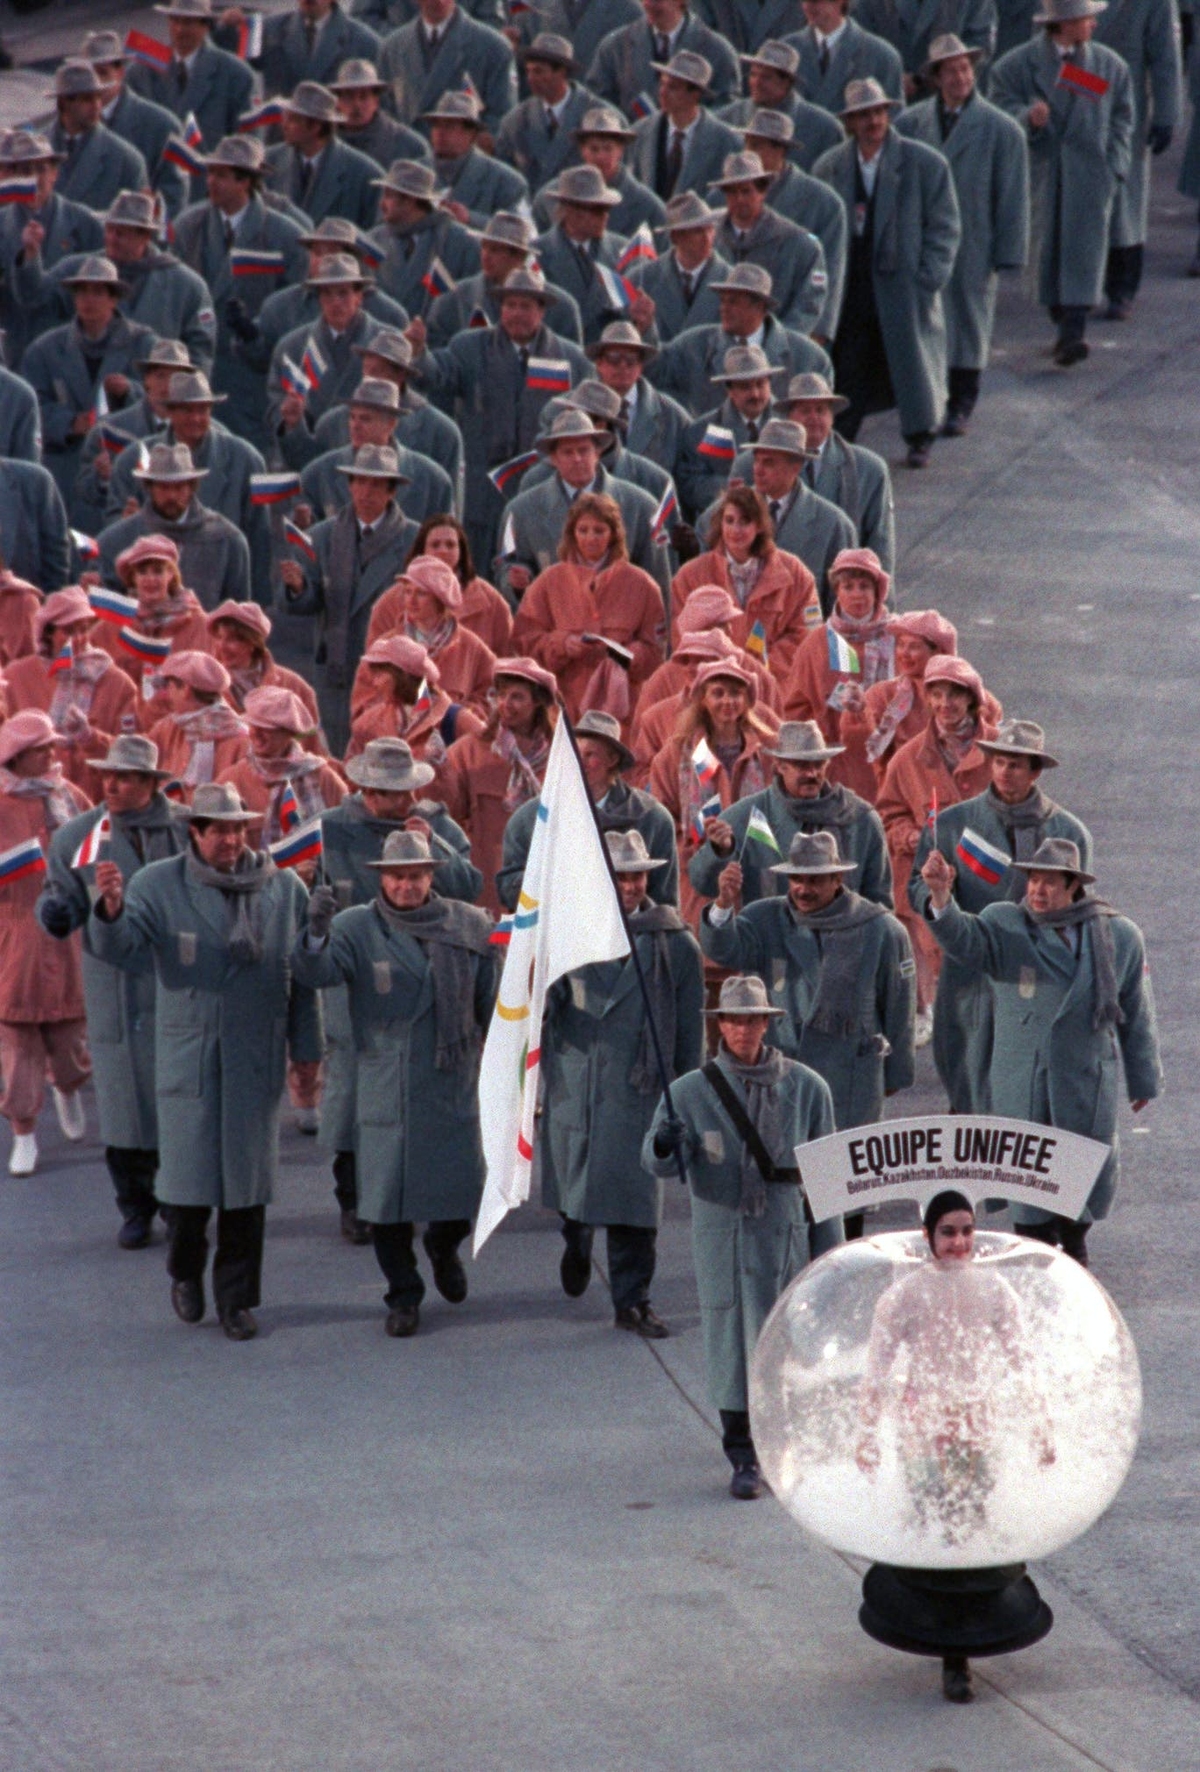 Cùng năm, các vận động viên Nga chọn màu xám và hồng làm màu đồng phục. Khi diễu hành, đội tuyển Nga tạo nên một tổng thể vui mắt.